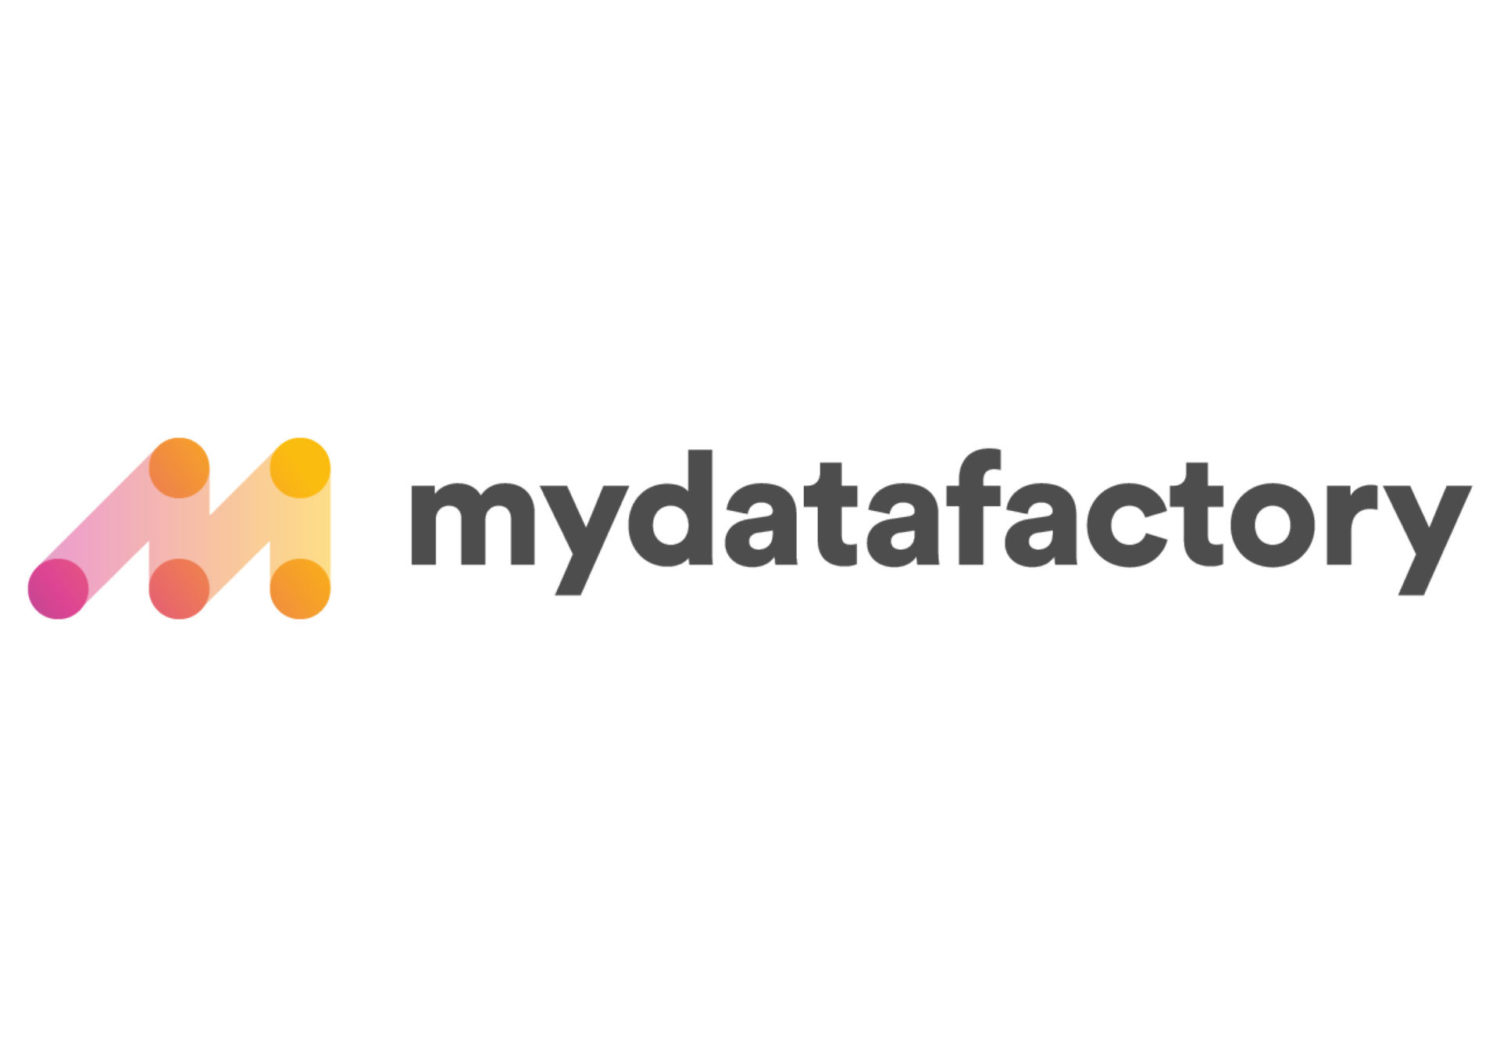 MyDatafactory